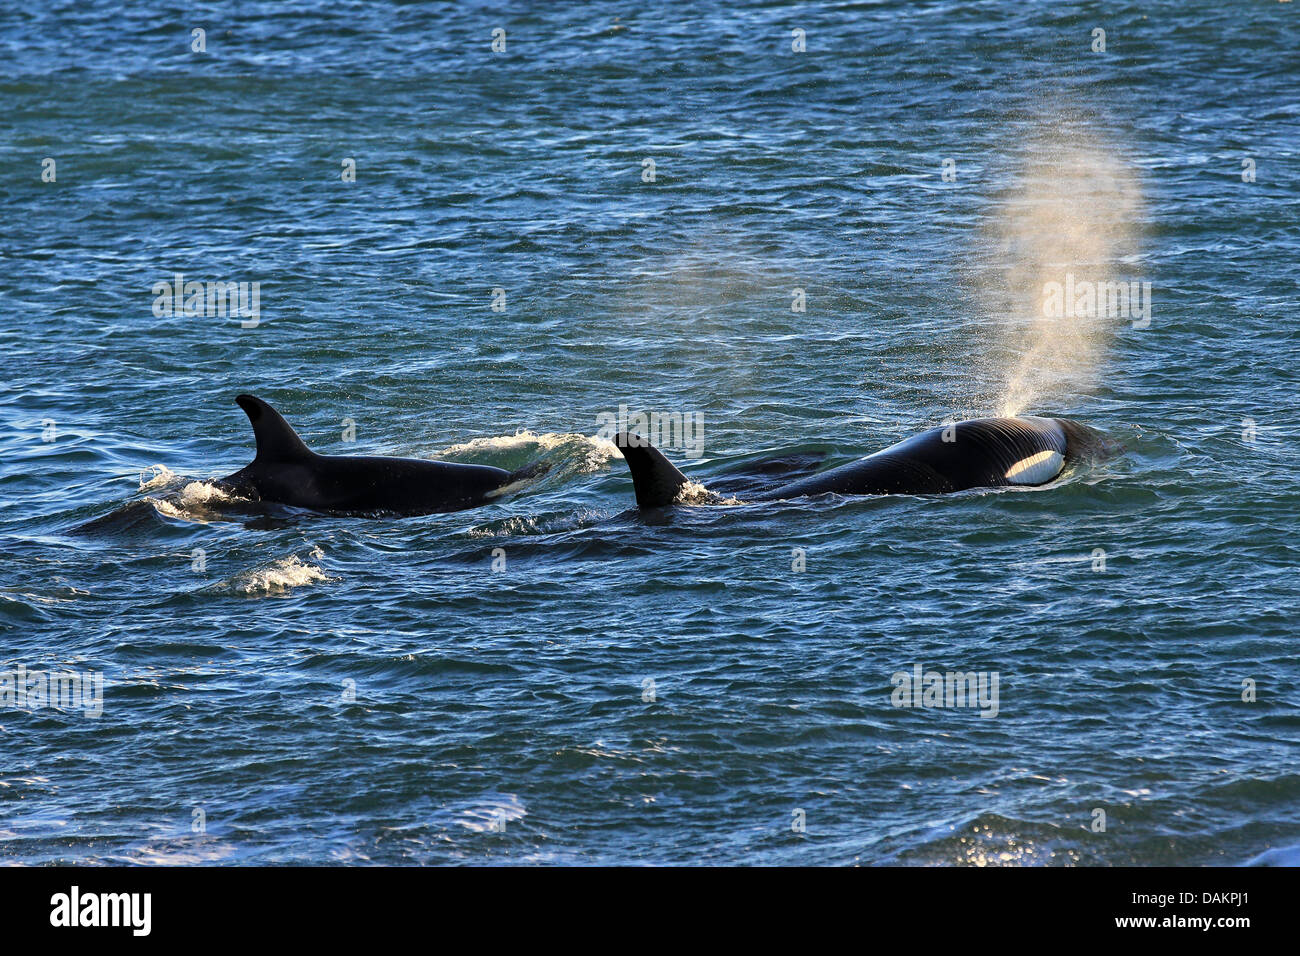 Orca, grand, de l'épaulard (Orcinus orca) grampus, deux épaulards nageant à la surface de l'eau pour la prise de souffle, l'Argentine, Patagonie, Valdes Banque D'Images